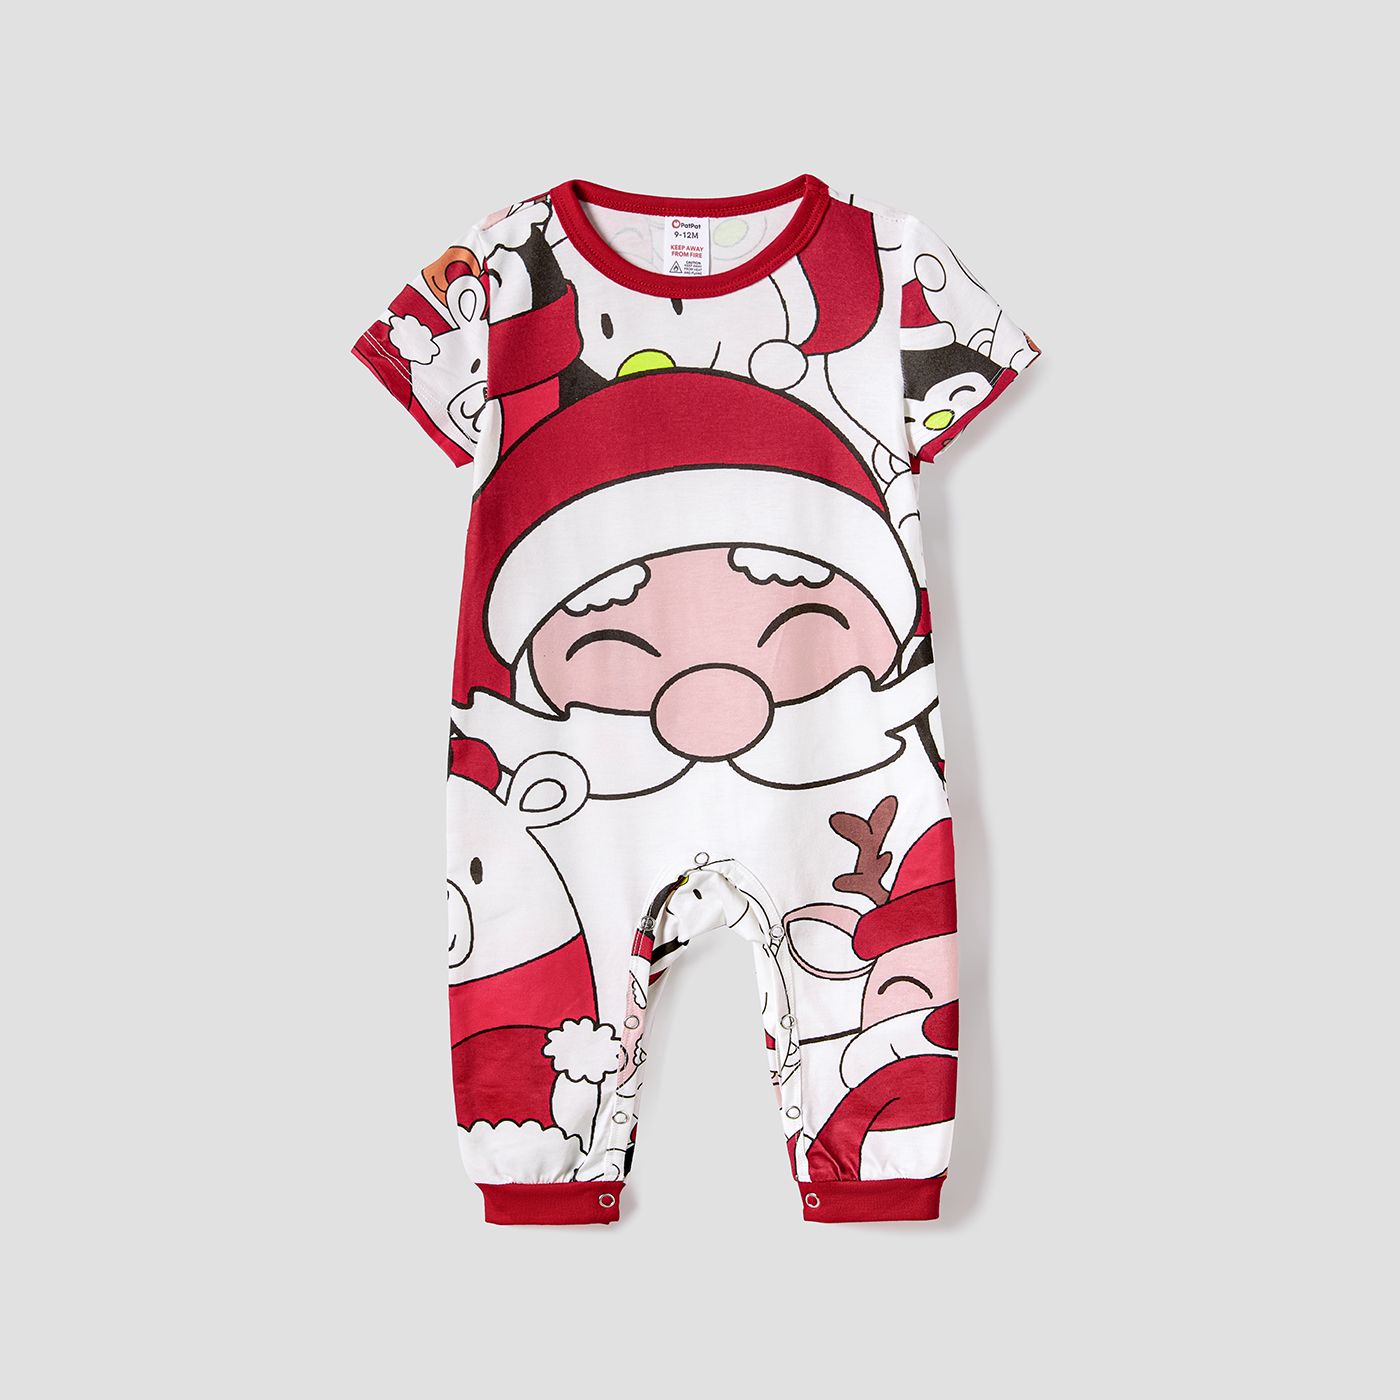 Christmas Santa And Snowman Print Family Matching Short-sleeve Tops And Shorts Pajamas Sets (Flame Resistant)